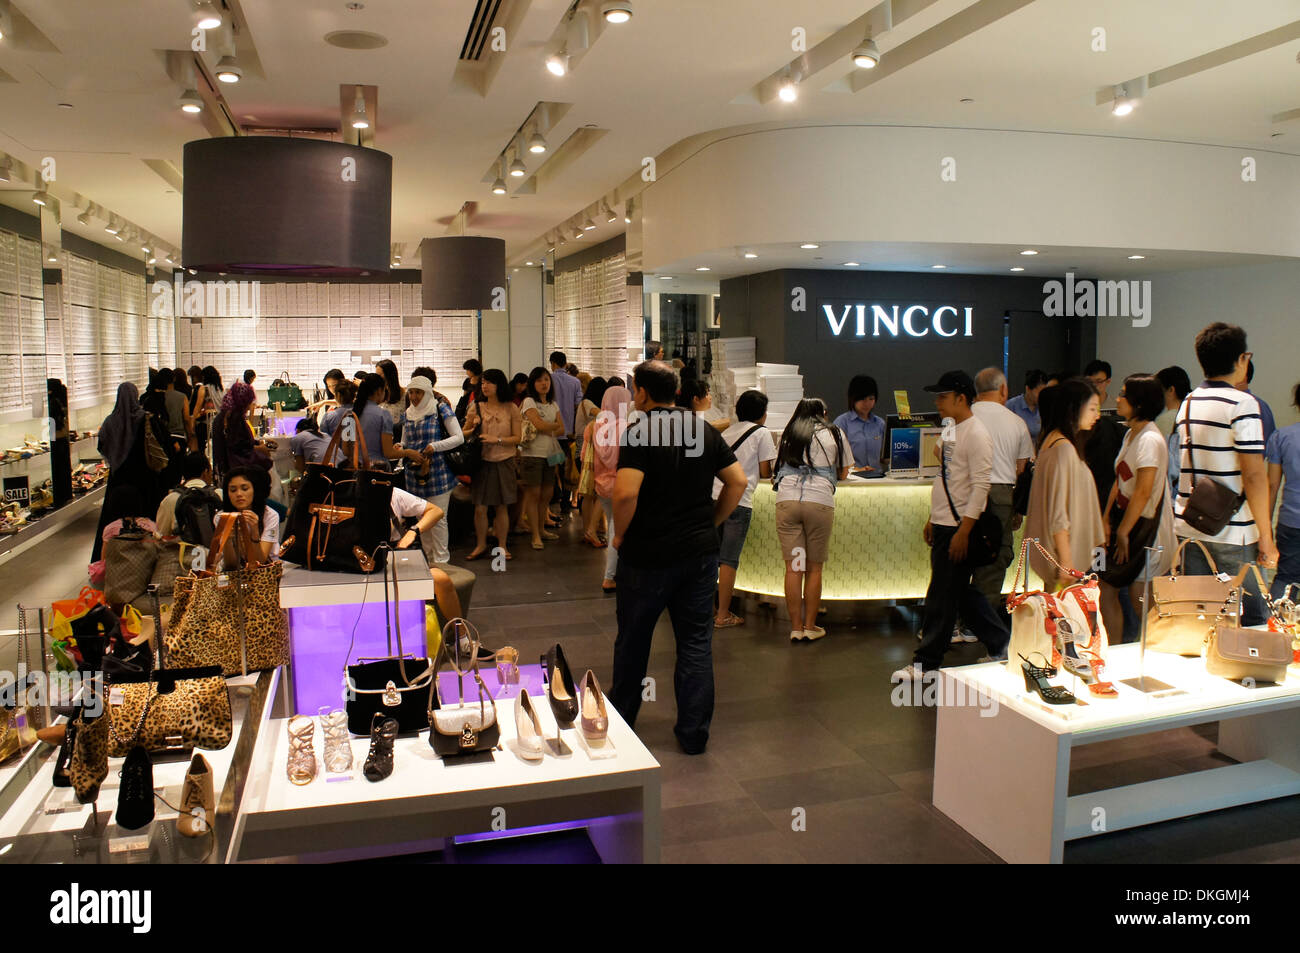 women shoe store Vincci in Bukit Bintang, Kuala Lumpur, Malaysia Stock Photo